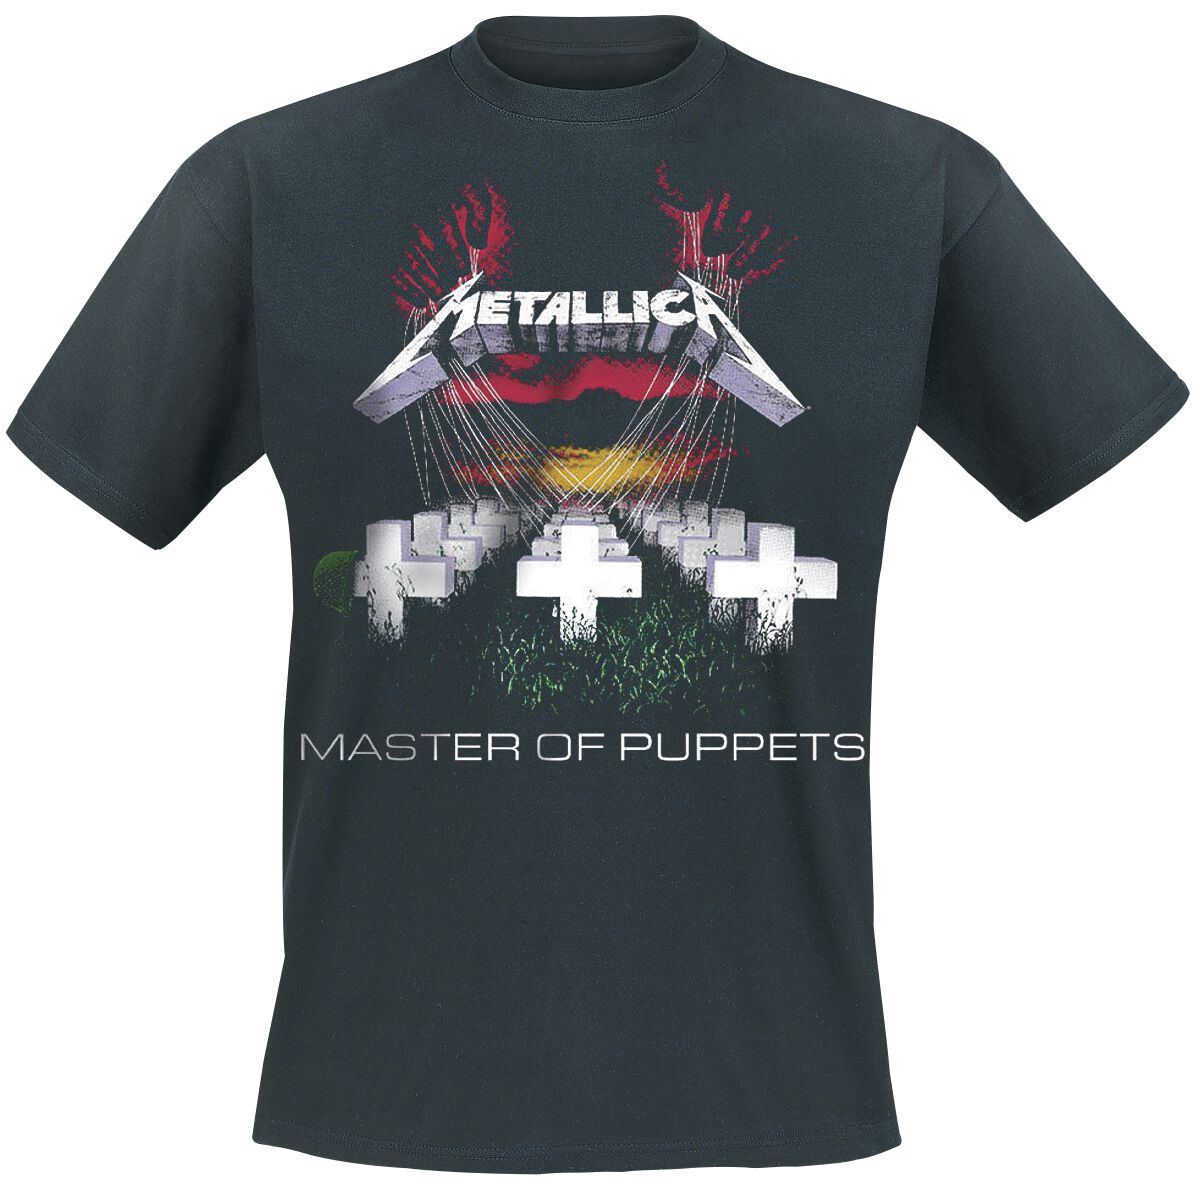 Metallica T-Shirt - Master Of Puppets - S bis 5XL - für Männer - Größe XL - schwarz  - Lizenziertes Merchandise!